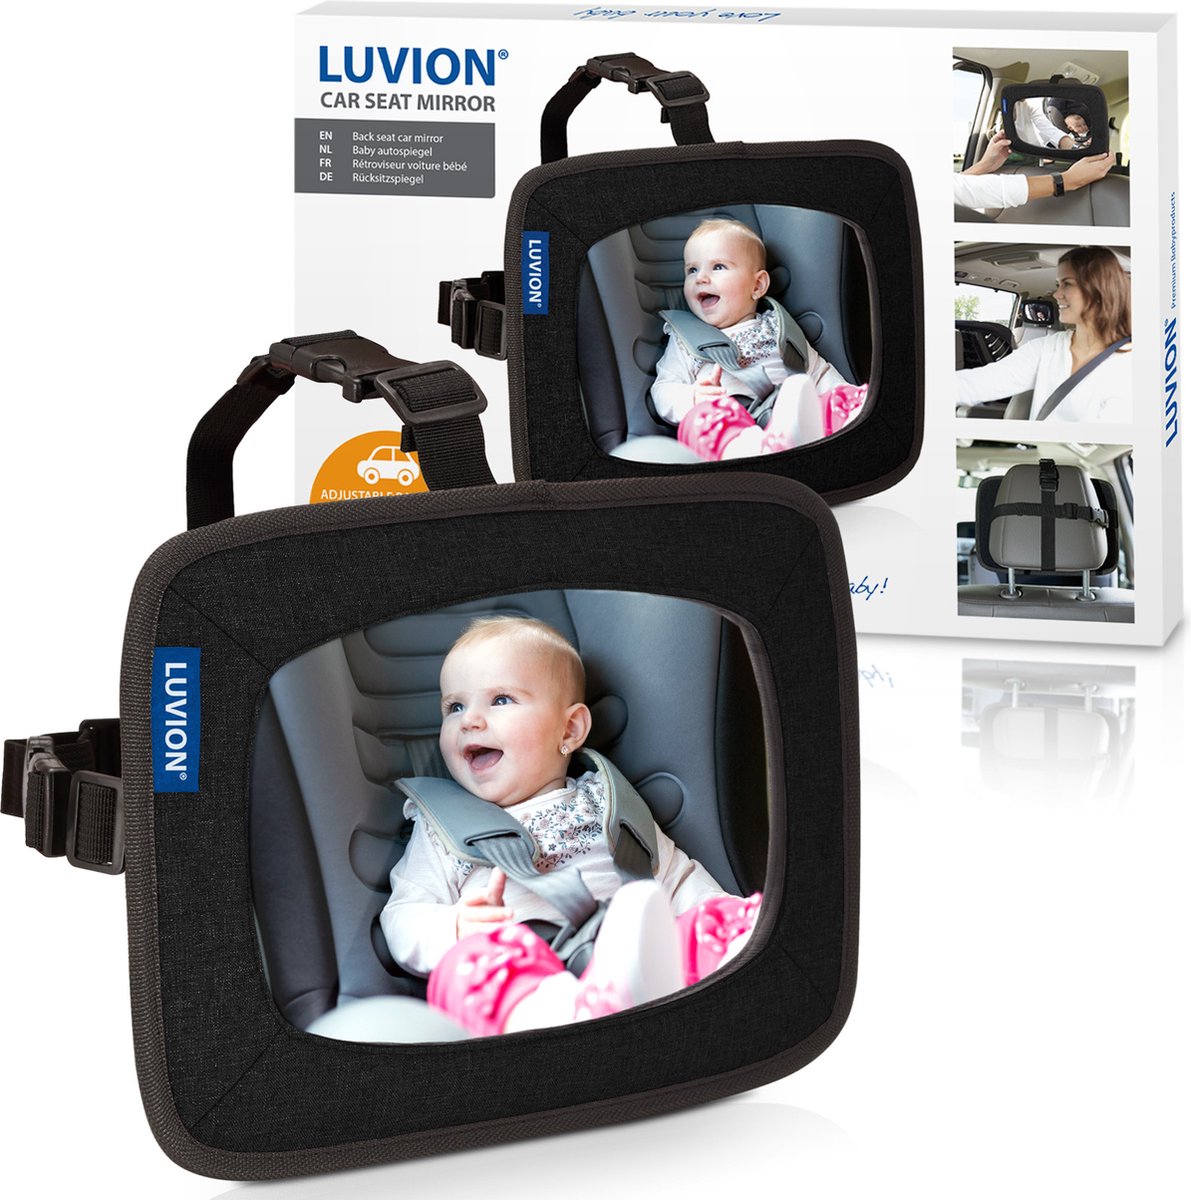 Auto baby spiegel als relatiegeschenken (100010120)